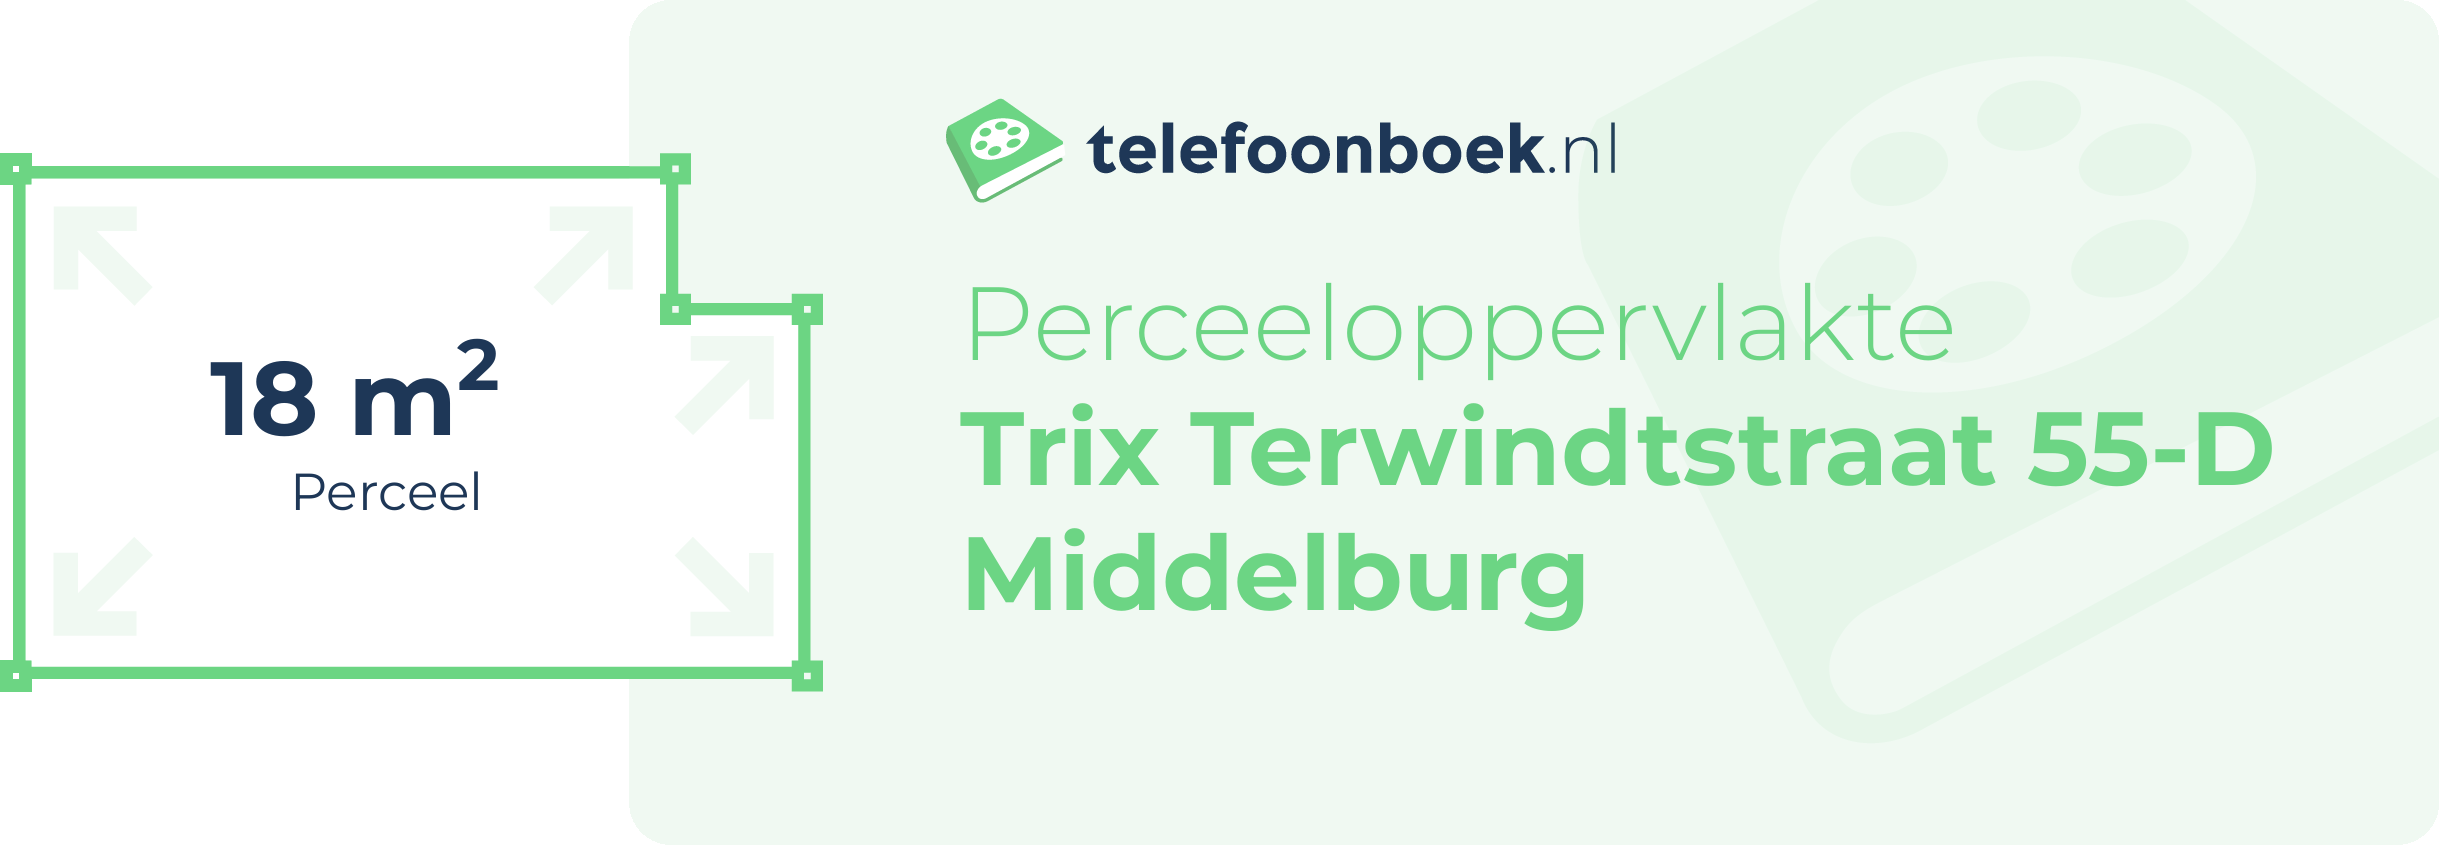 Perceeloppervlakte Trix Terwindtstraat 55-D Middelburg